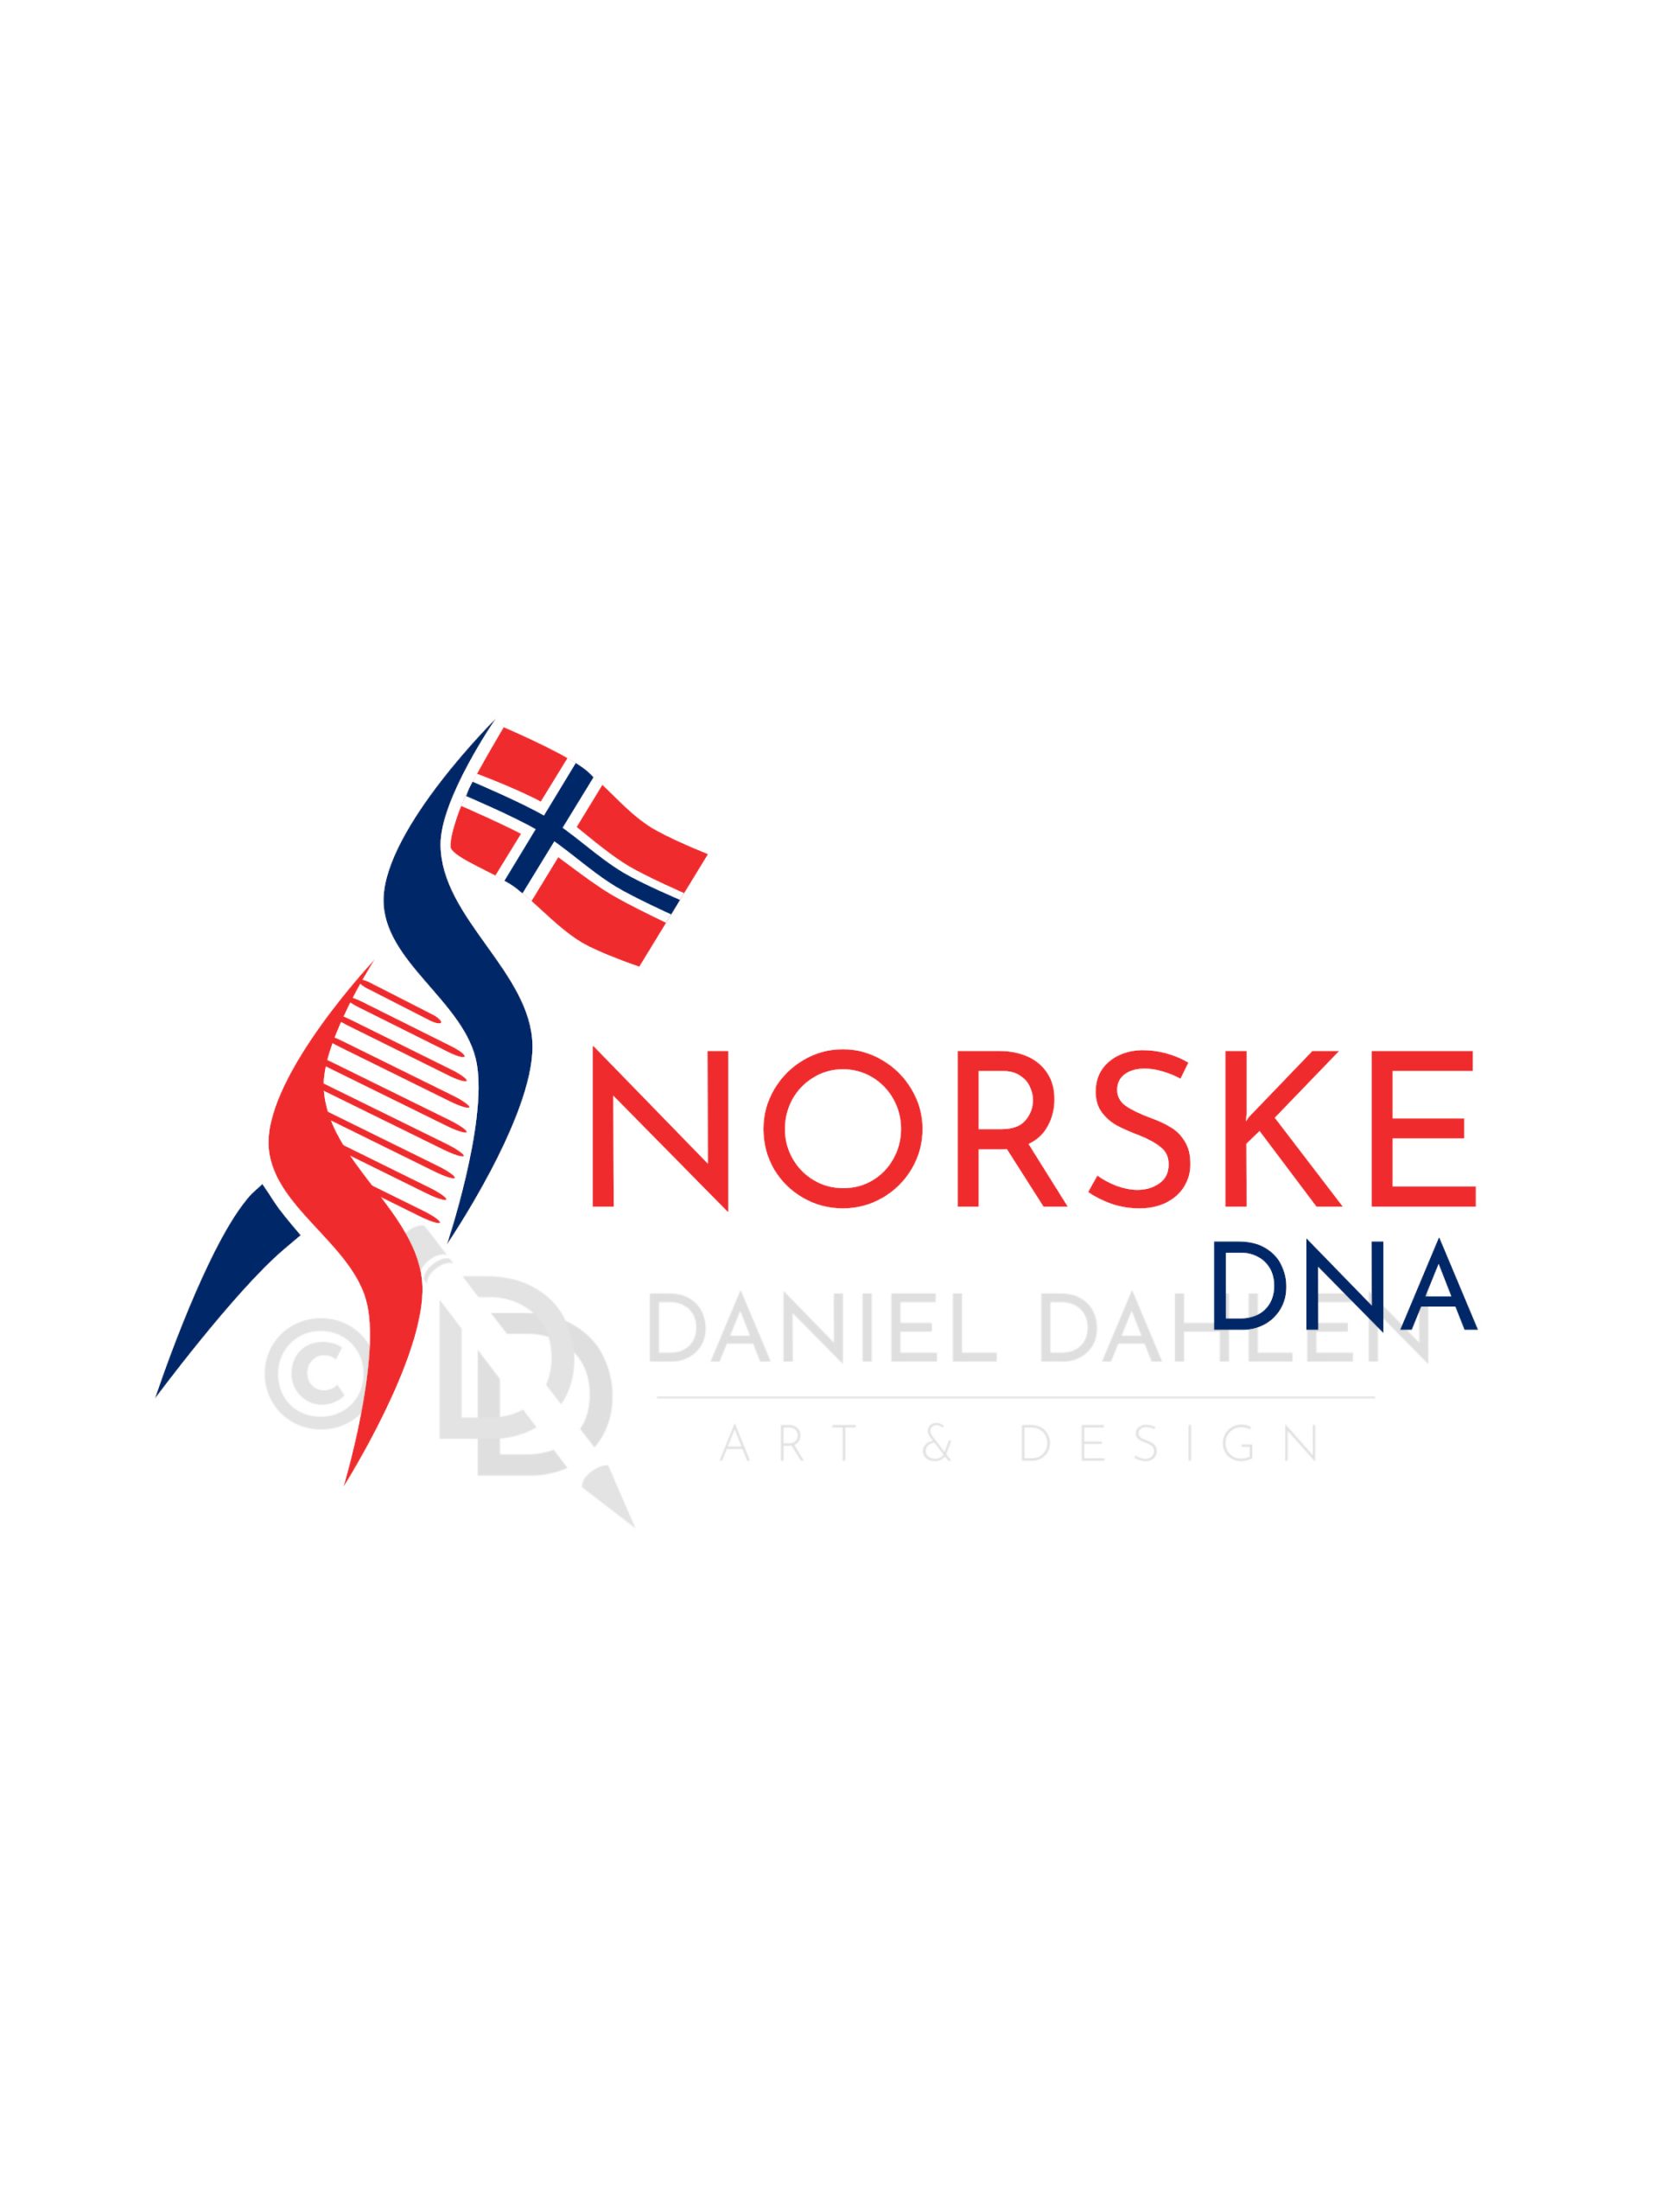 Norwegian DNA Digital Design